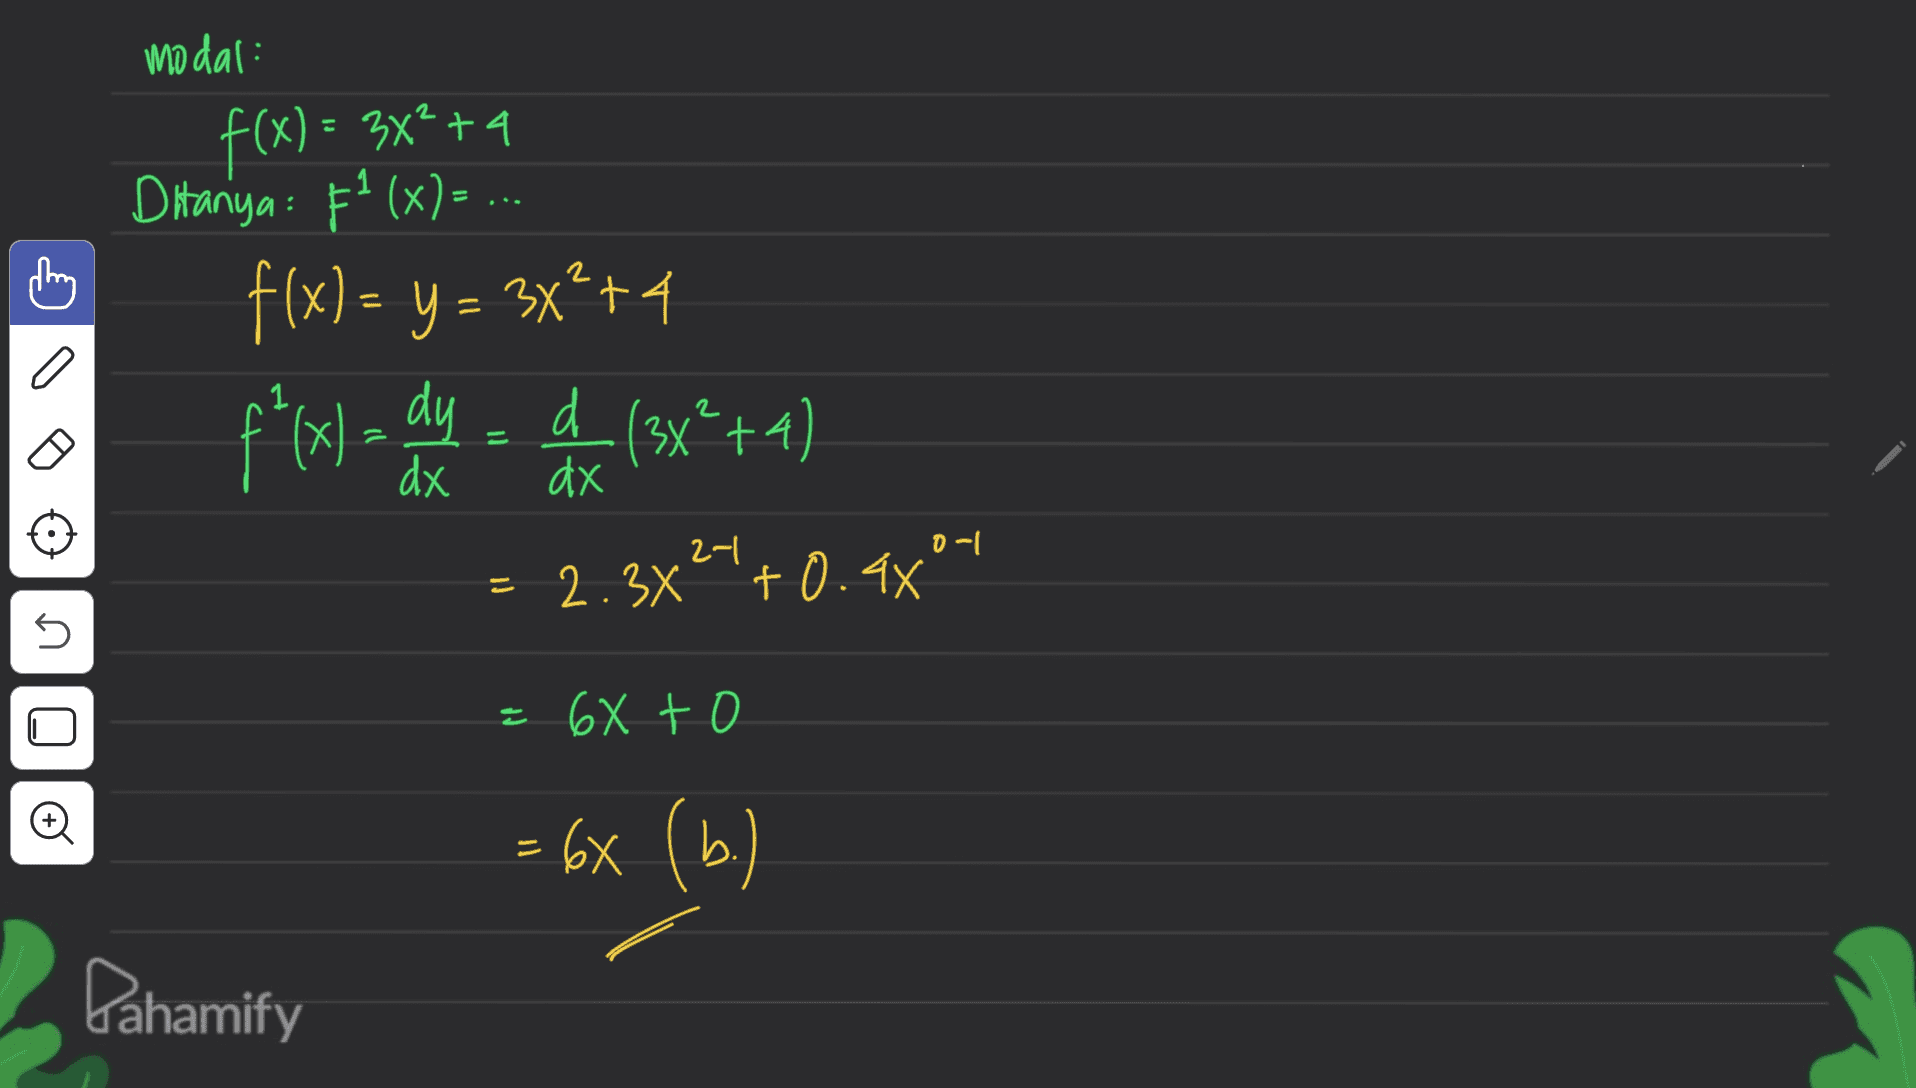 modal: こ f(x) = 3x2 +4 = = Ditanya: F²(x)= ... f(x) = y = 3x?+4 f*(x ) = ax = (3x*+4) xdy d = 2.3x24+0.48°4 1 d 3x²4 = dx dx 러 0-1 = 5 = 68 to Oo = 6X (b.) Pahamify 